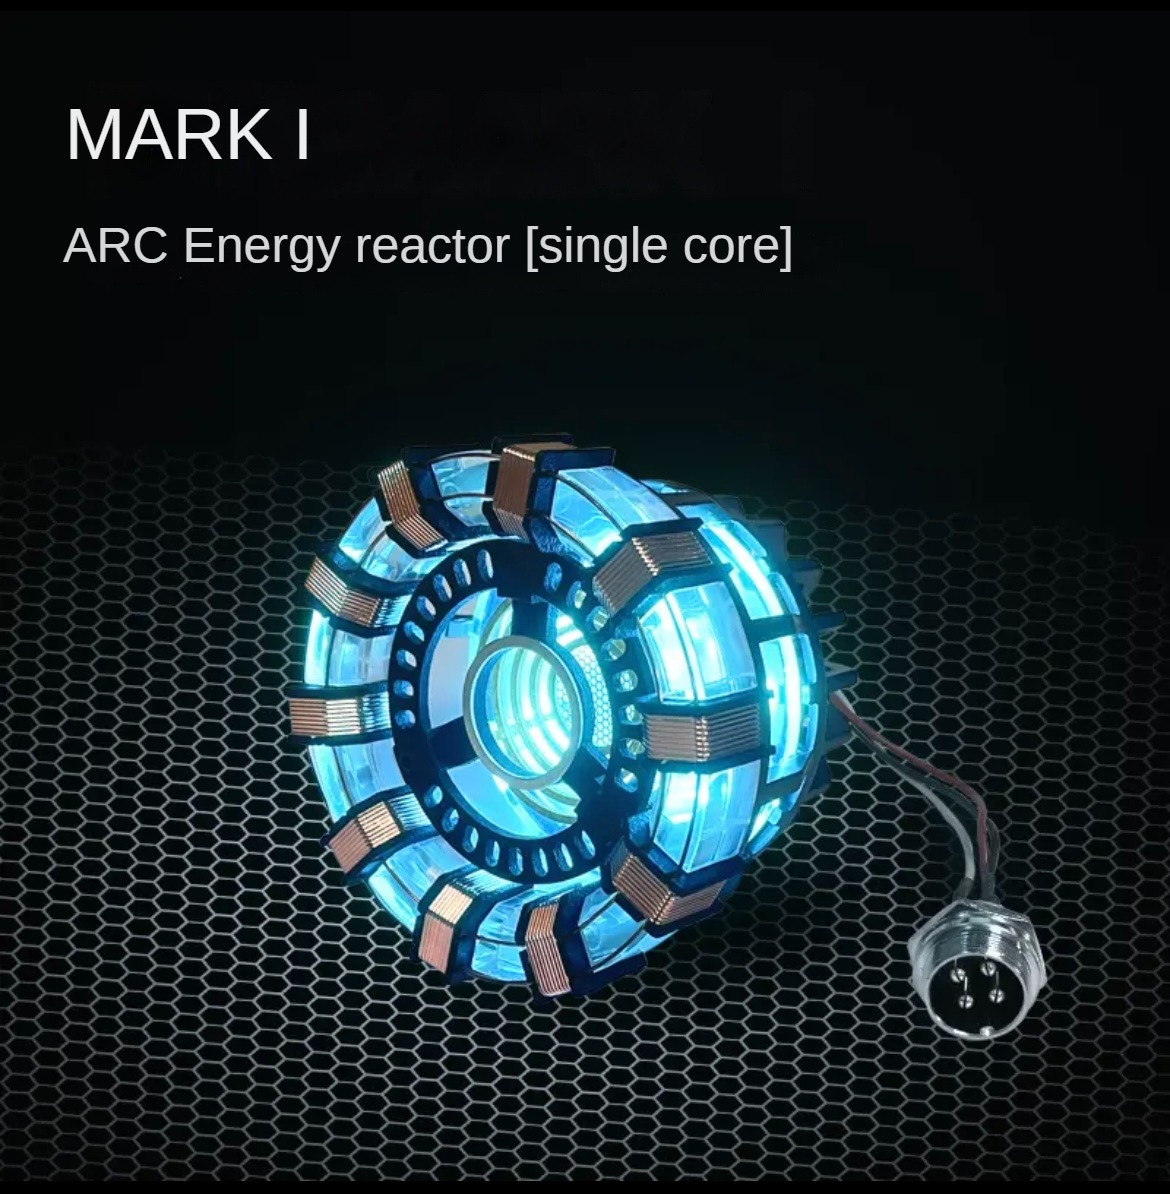 Iron Man reactor heart hand model toy light